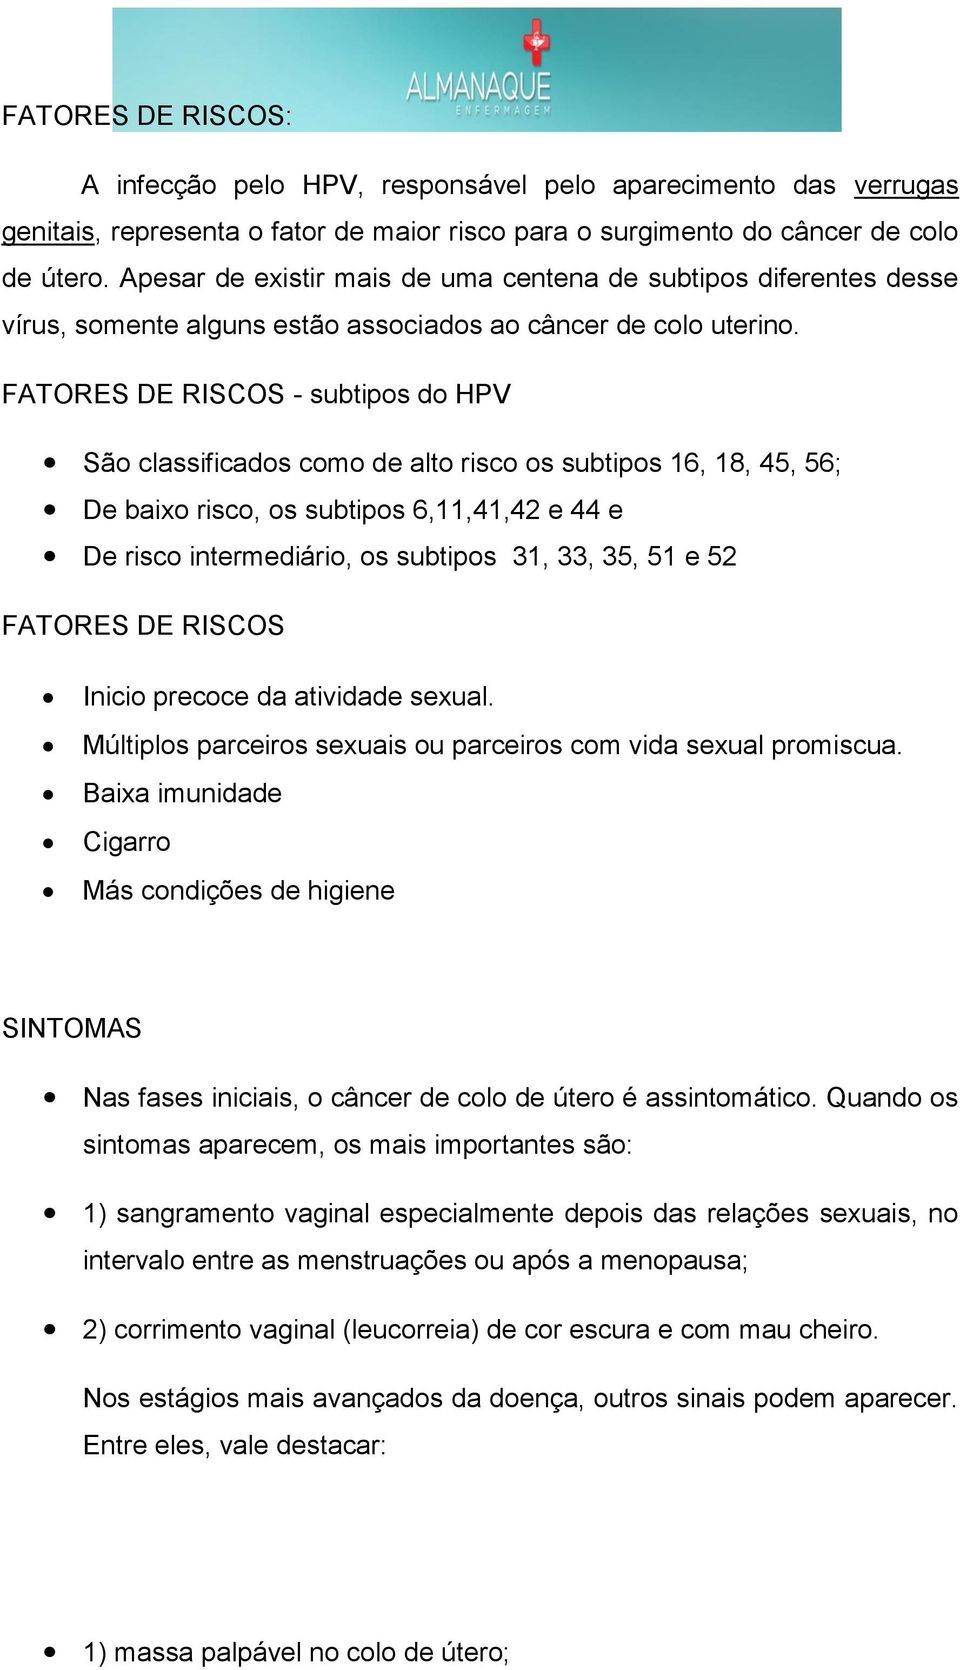 FATORES DE RISCOS - subtipos do HPV São classificados como de alto risco os subtipos 16, 18, 45, 56; De baixo risco, os subtipos 6,11,41,42 e 44 e De risco intermediário, os subtipos 31, 33, 35, 51 e